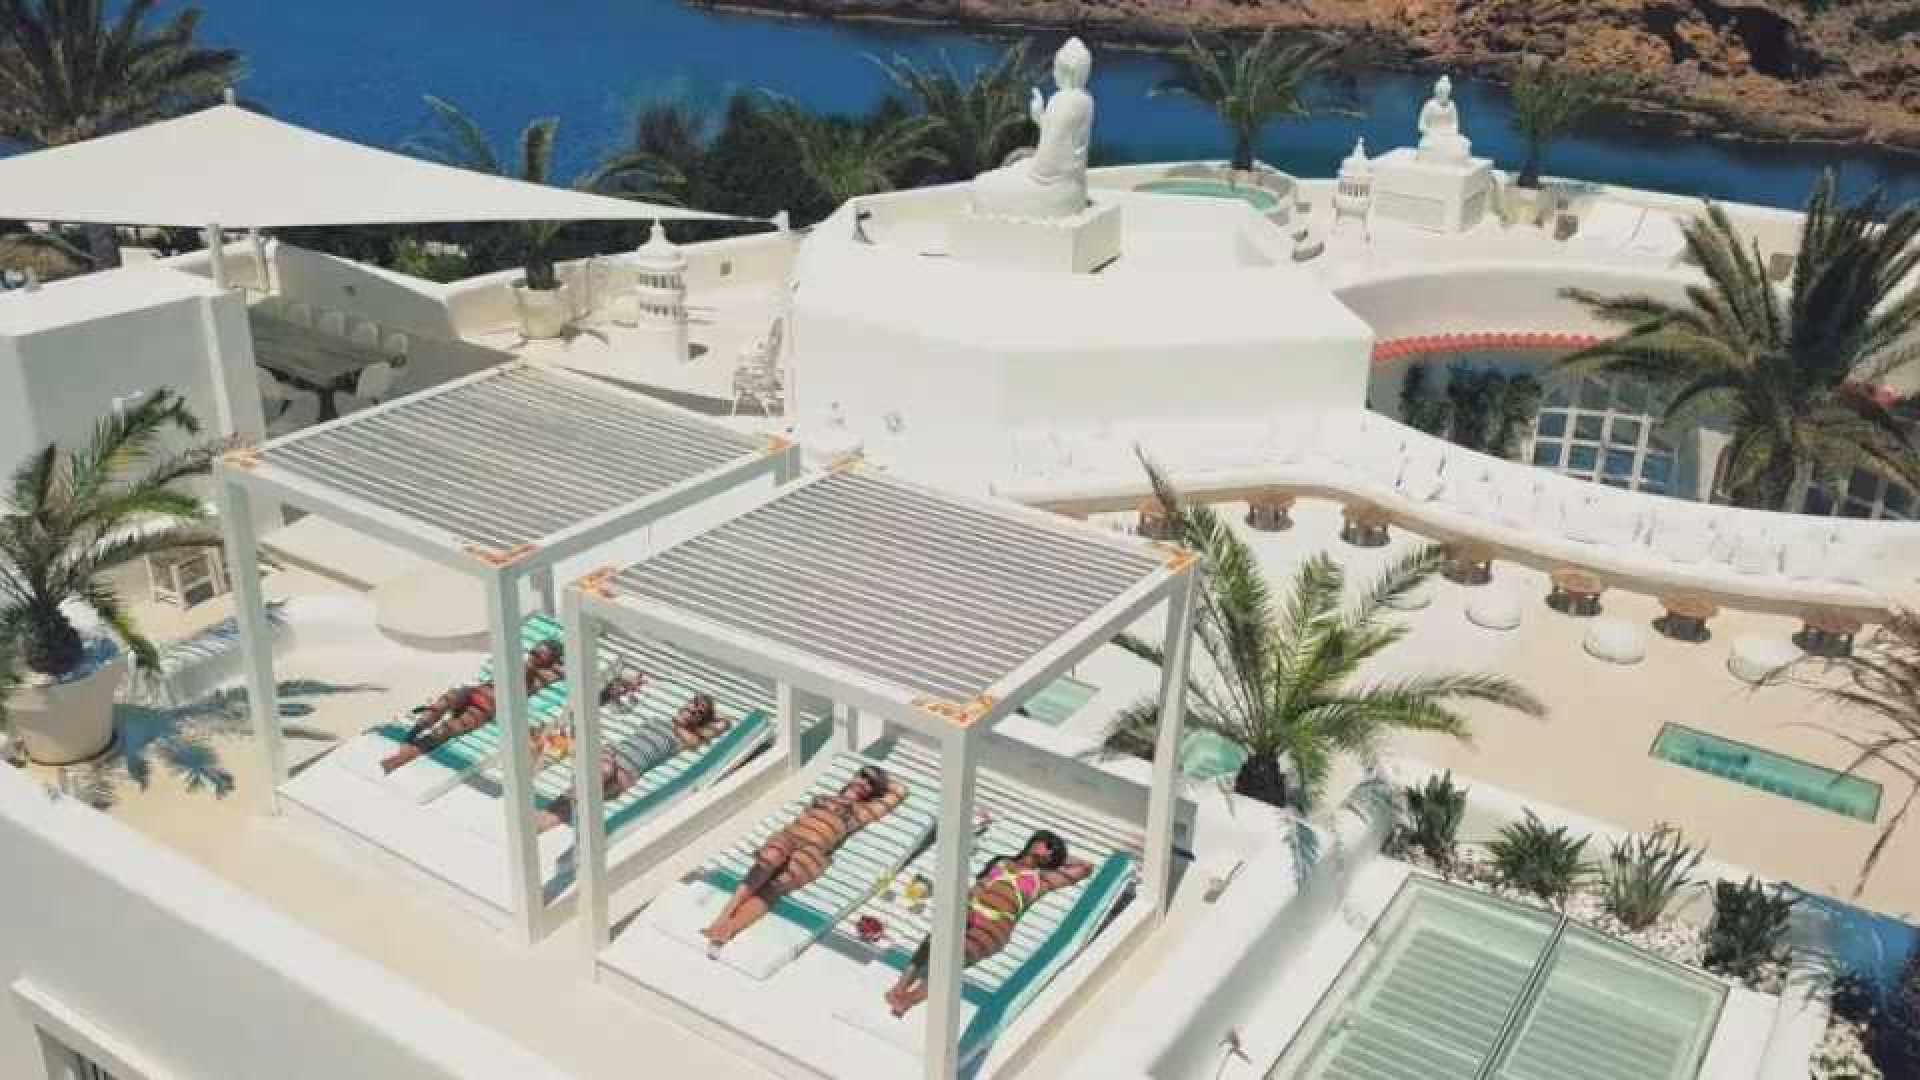 Gaat Yolanthe deze villa voor tien miljoen euro in de verkoop zetten? Zie foto's